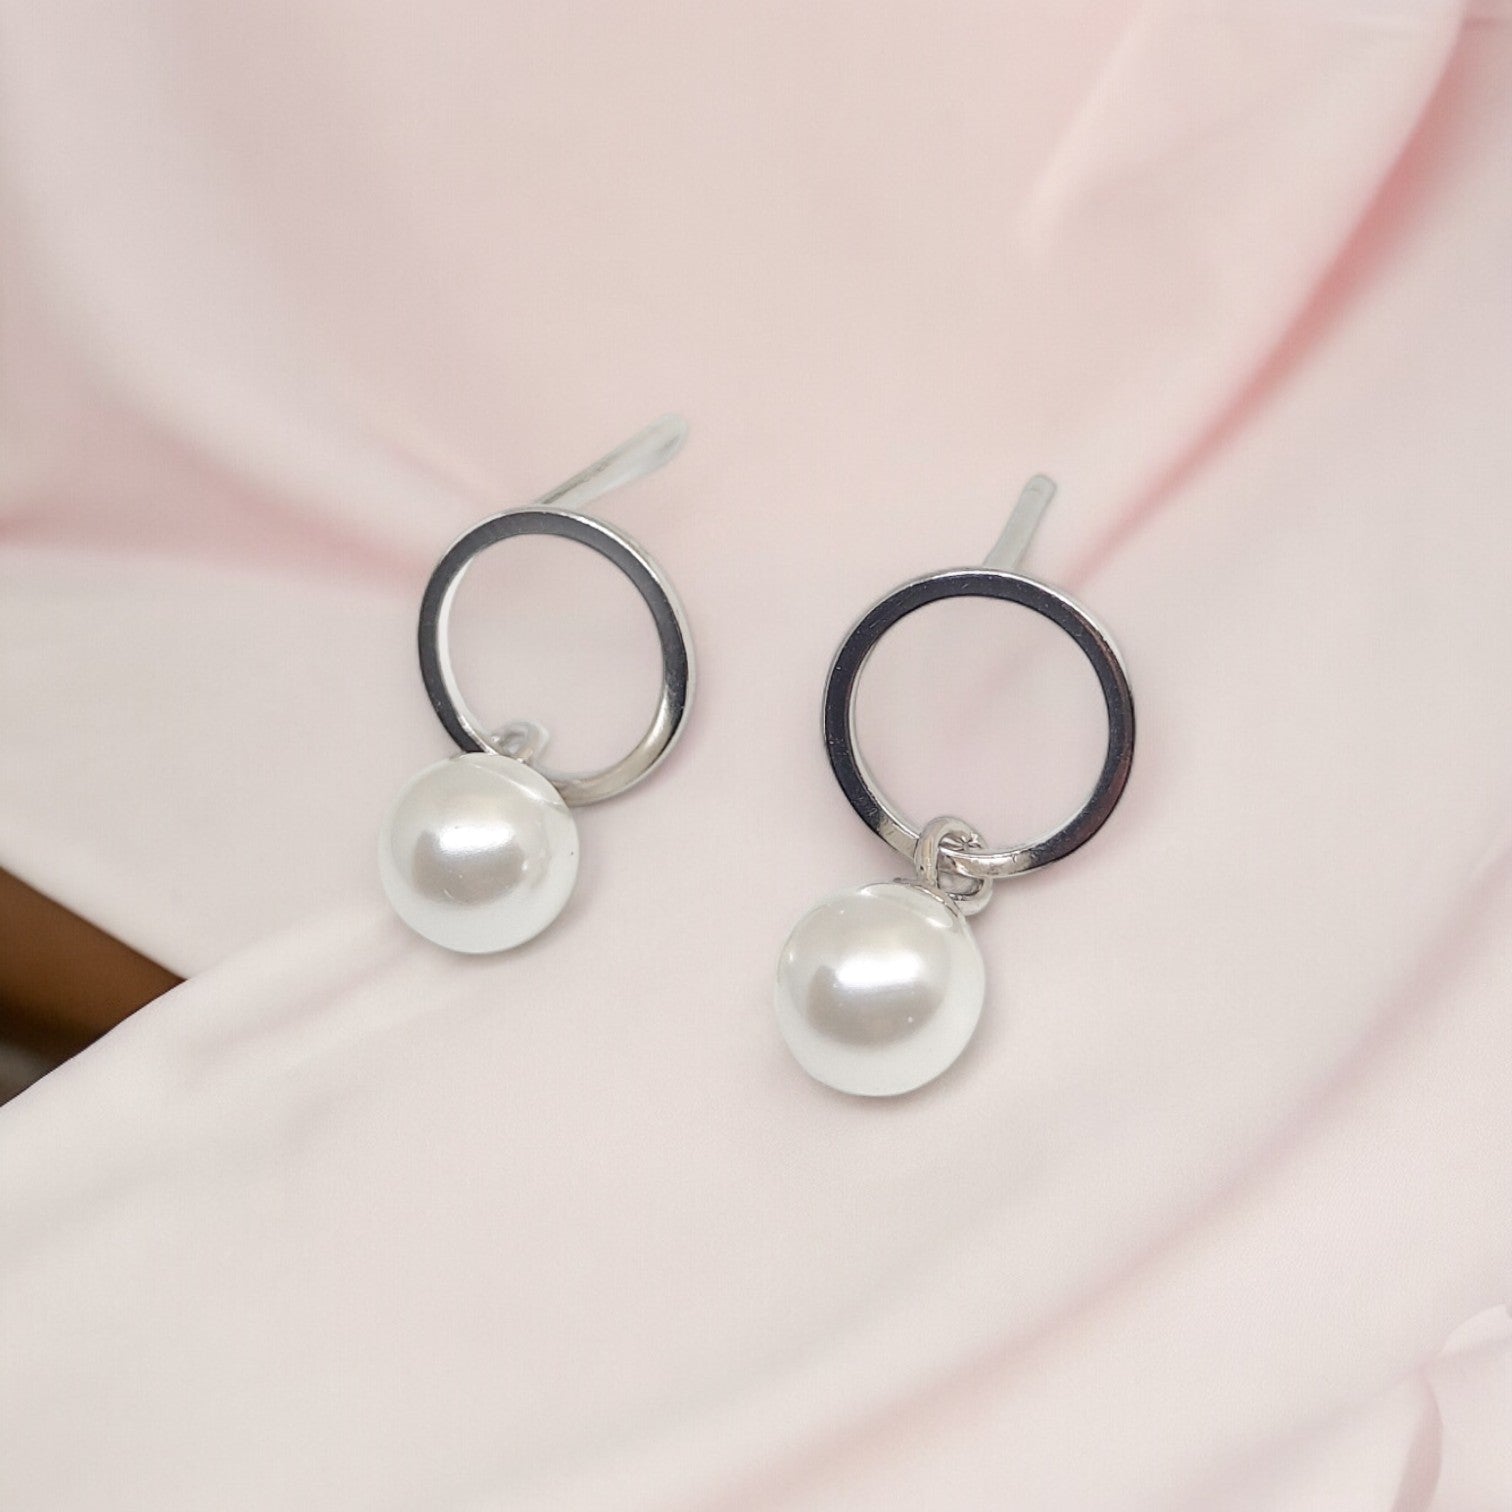 OEM Pearls Sterling Silver Earrings for Girls/Women